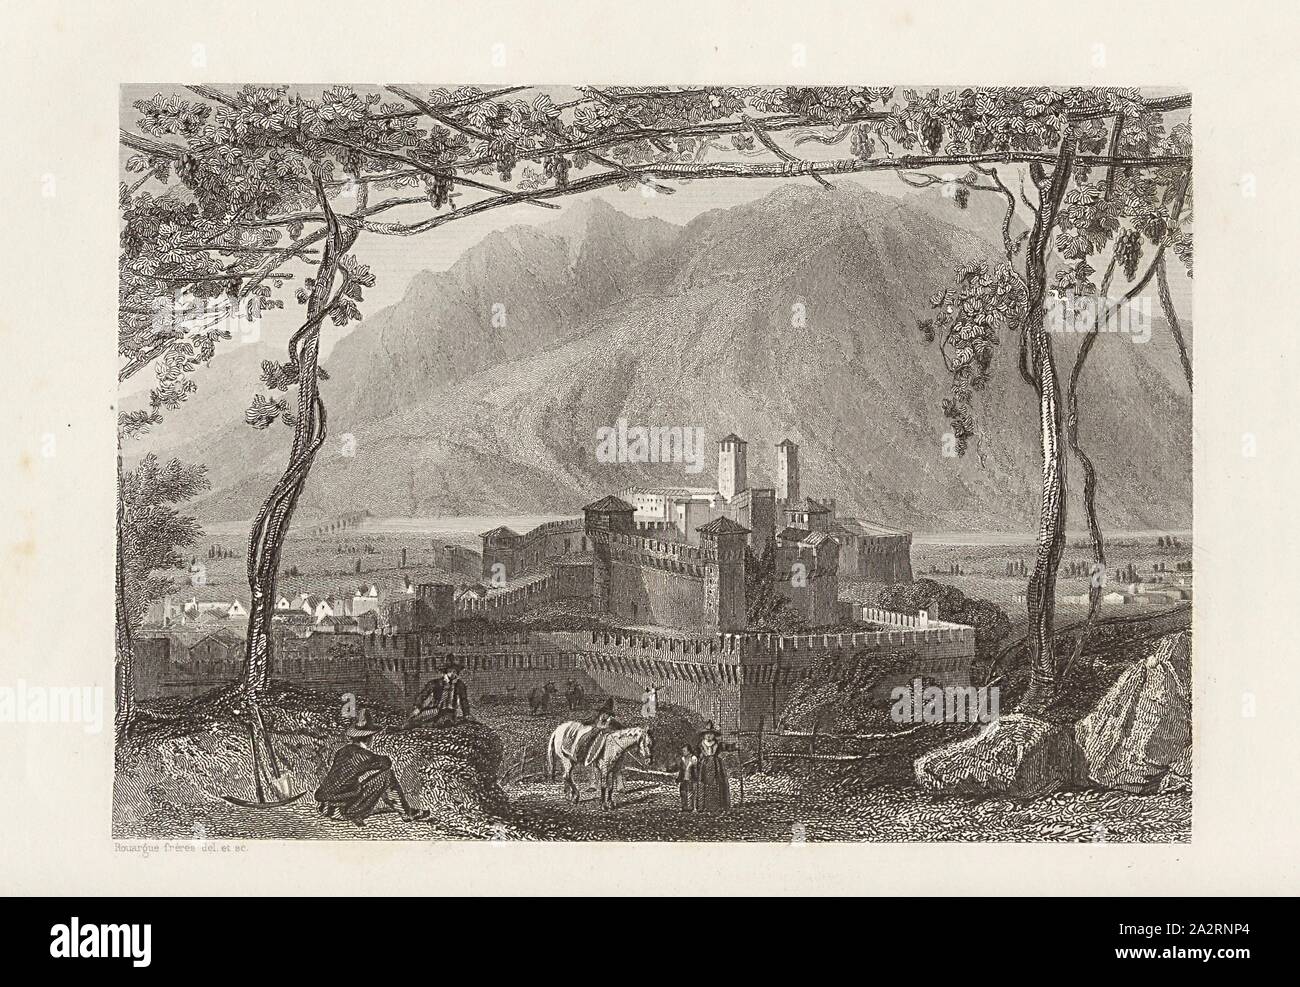 Bellinzone, Bellinzona, etching, to p. 248, Rouargue frères (del. et sc.), Xavier Marmier: Voyage en Suisse. Paris: Morizot, [1861 Stock Photo